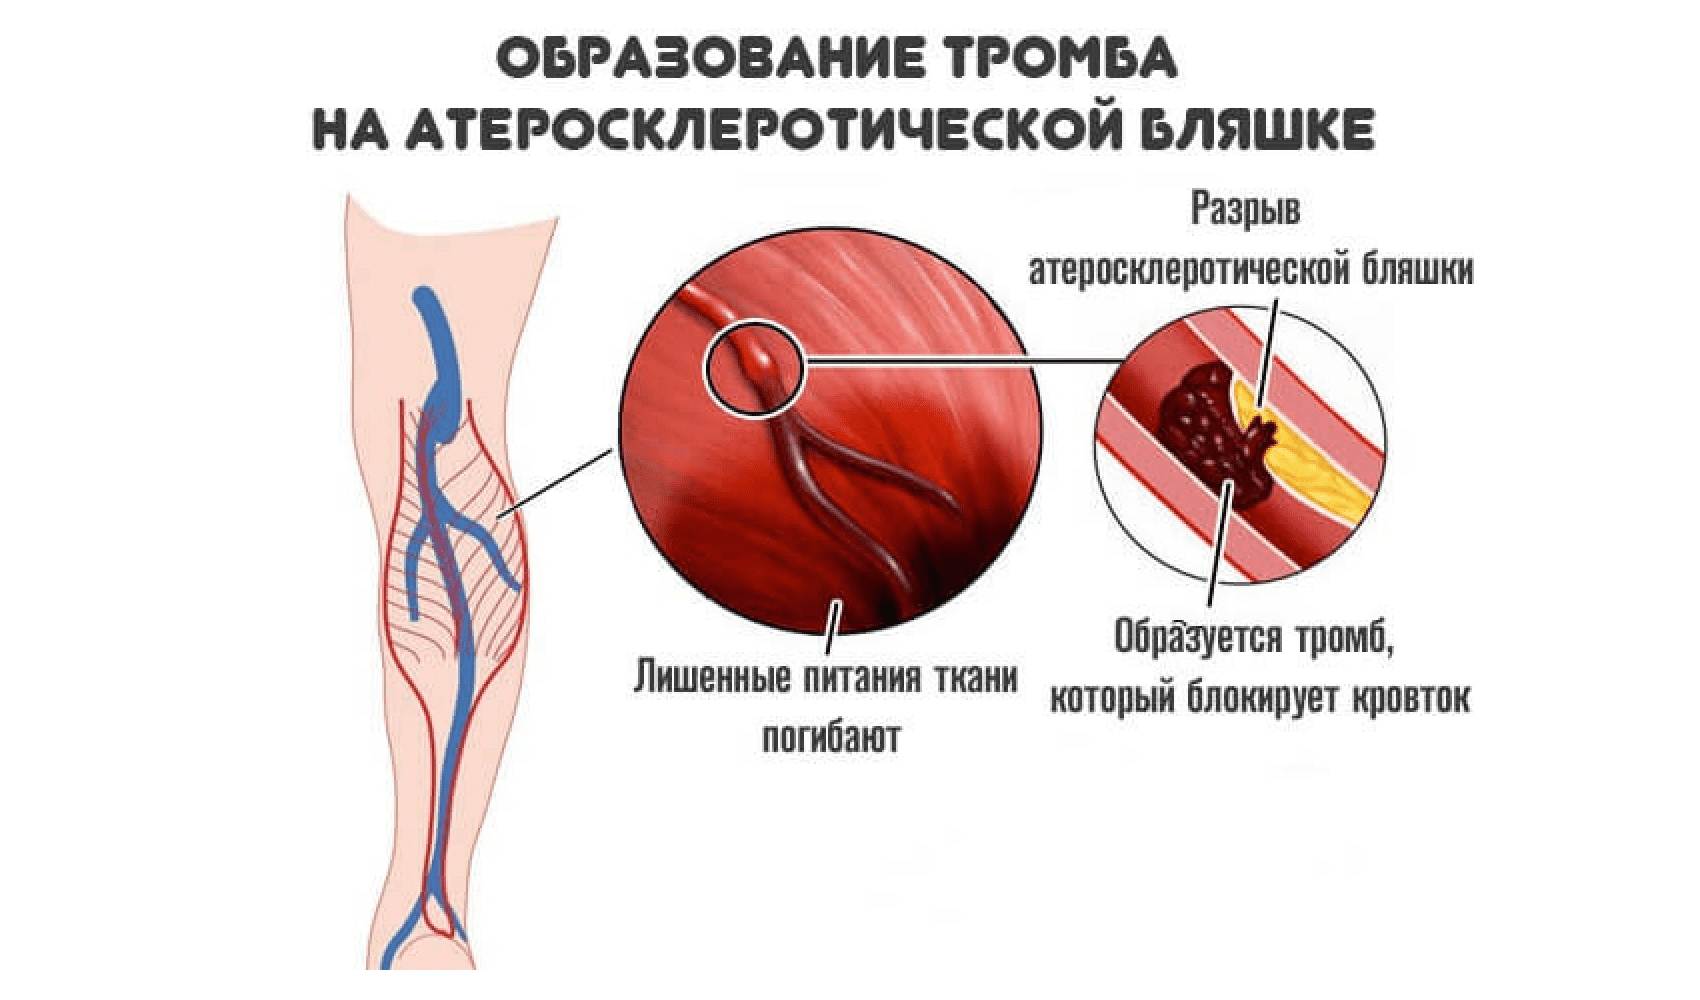 Тромб определение. Образование тромбов в артериях. Атеросклеротическая бляшка и тромб.